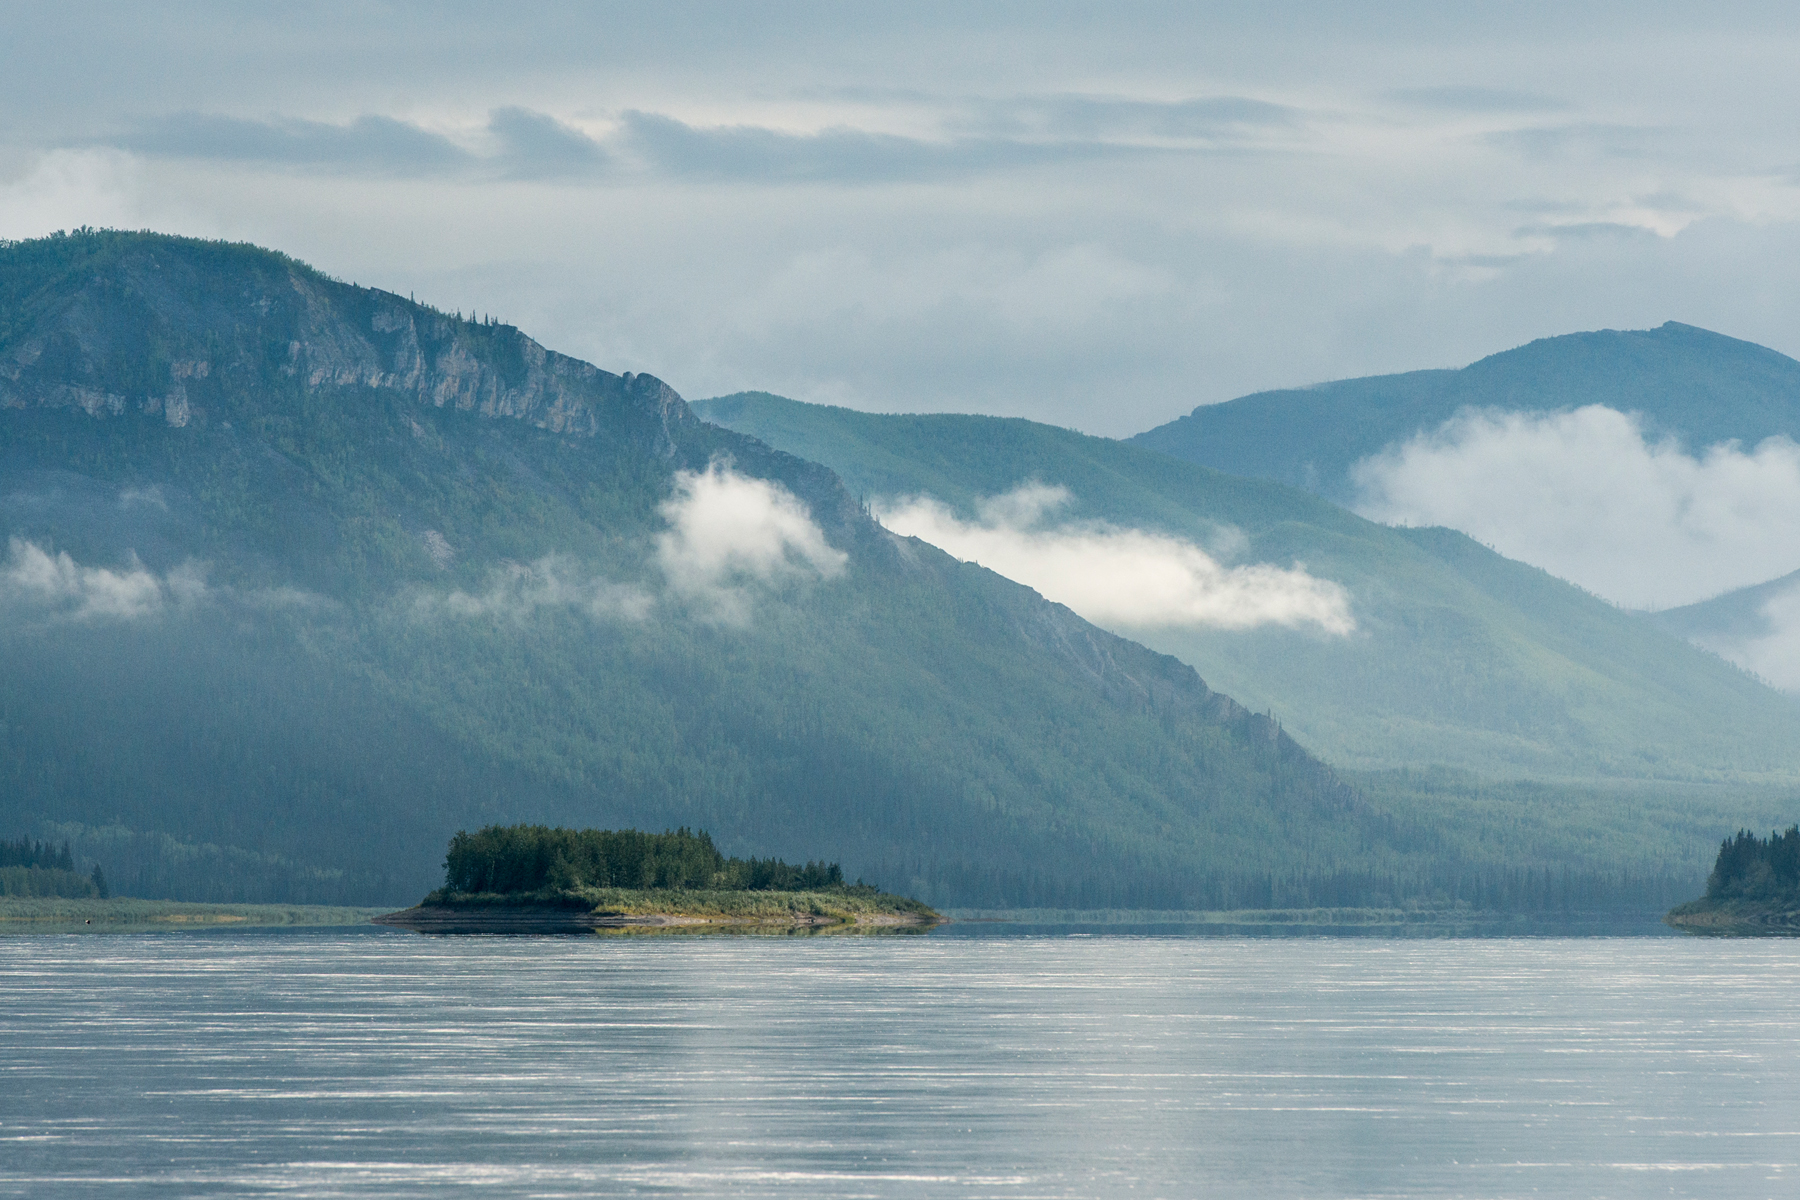 Yukon-Charley National Preserve